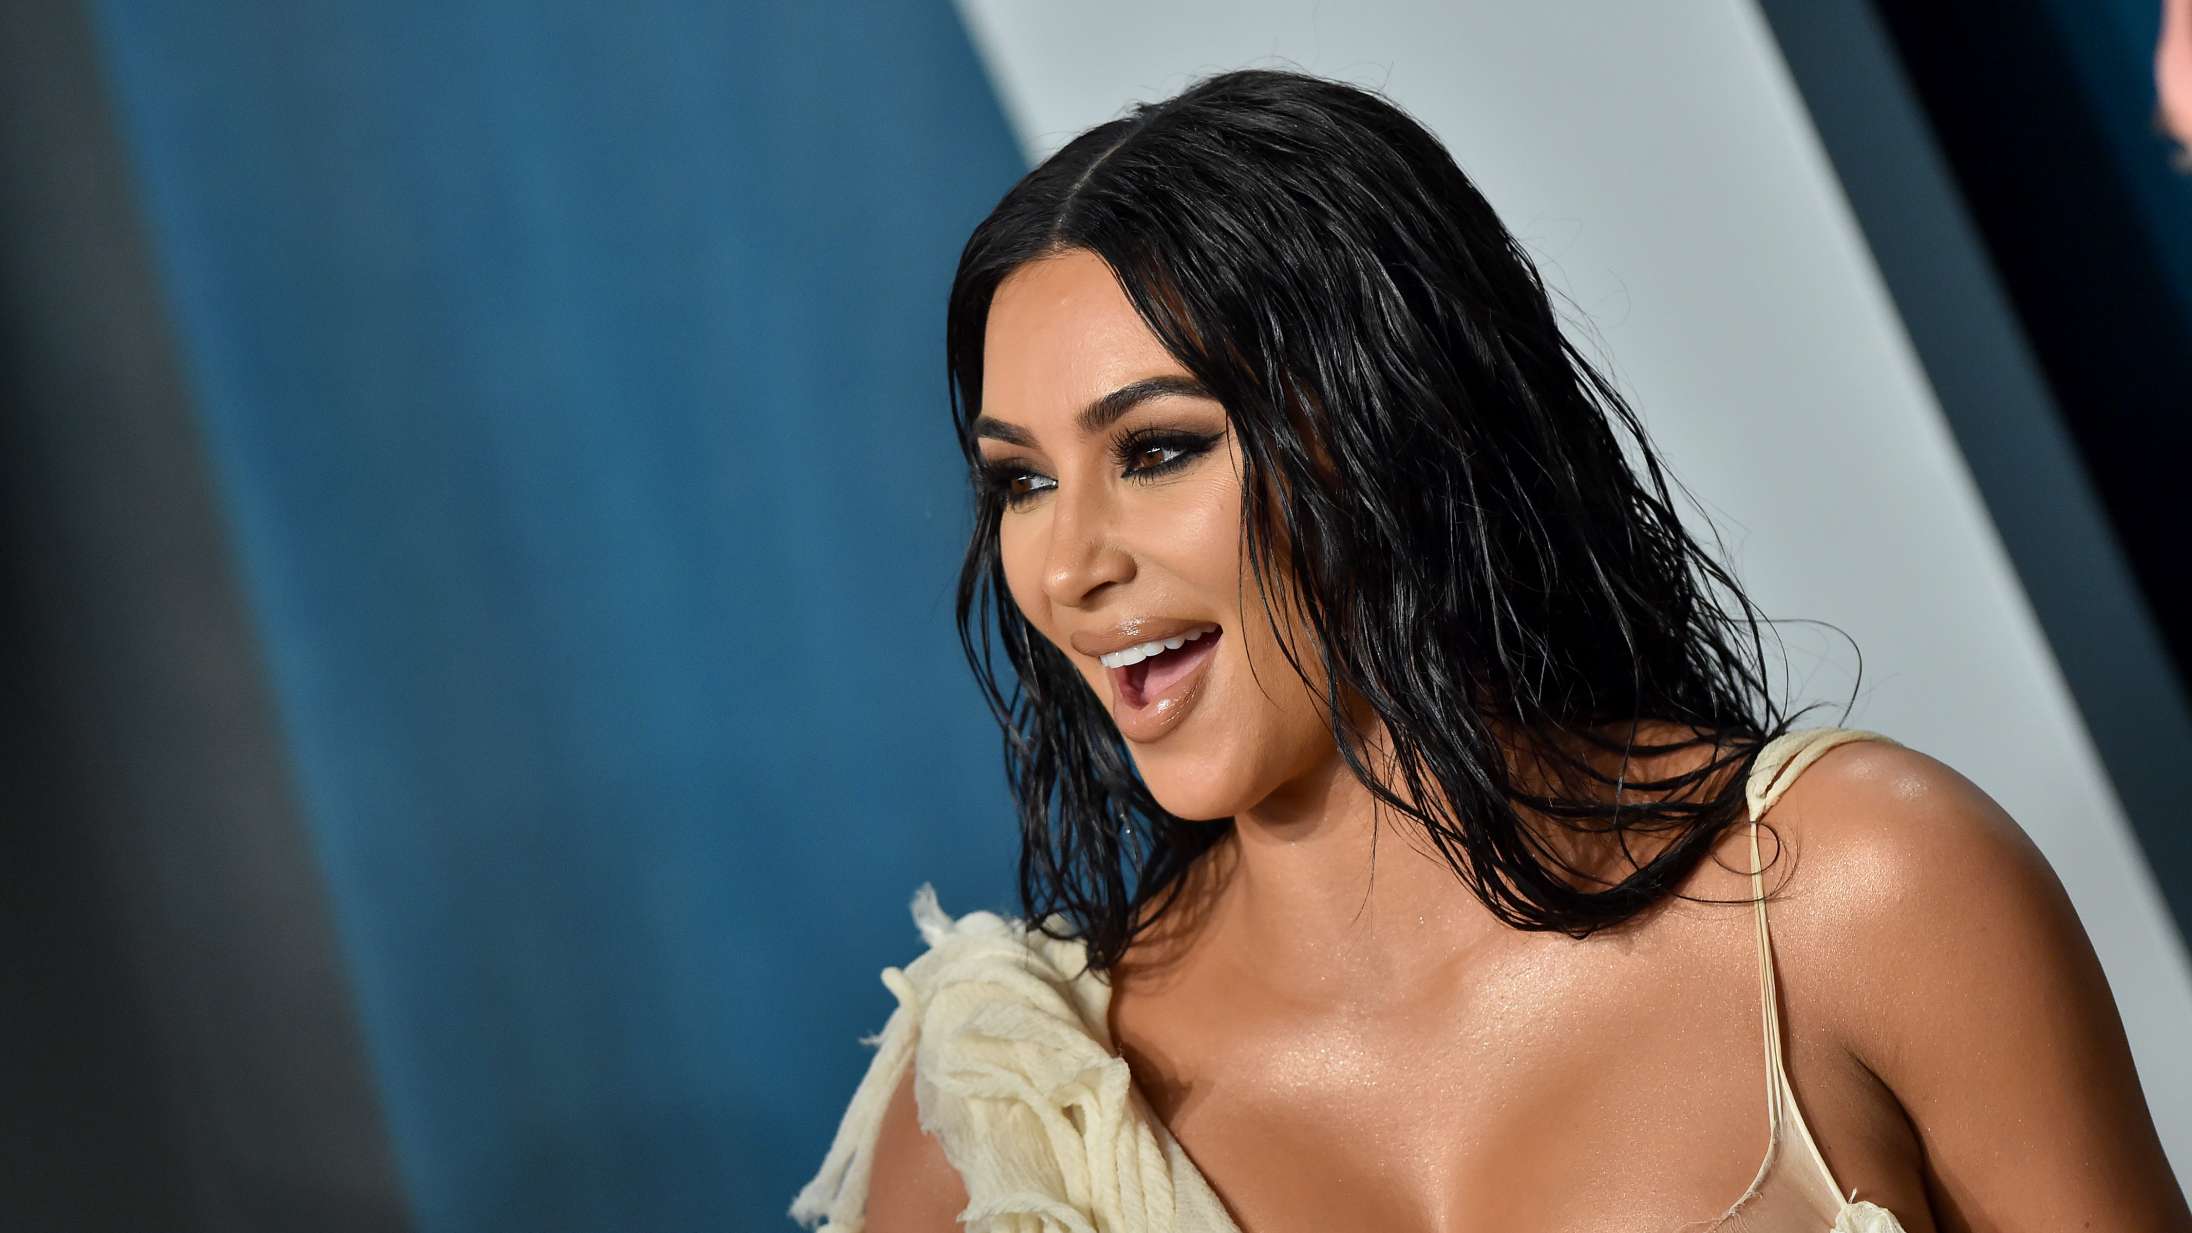 Gerningsmand bag Kim Kardashian-røveri i Paris taler ud: »Har jeg dårlig samvittighed? Nej, overhovedet ikke«